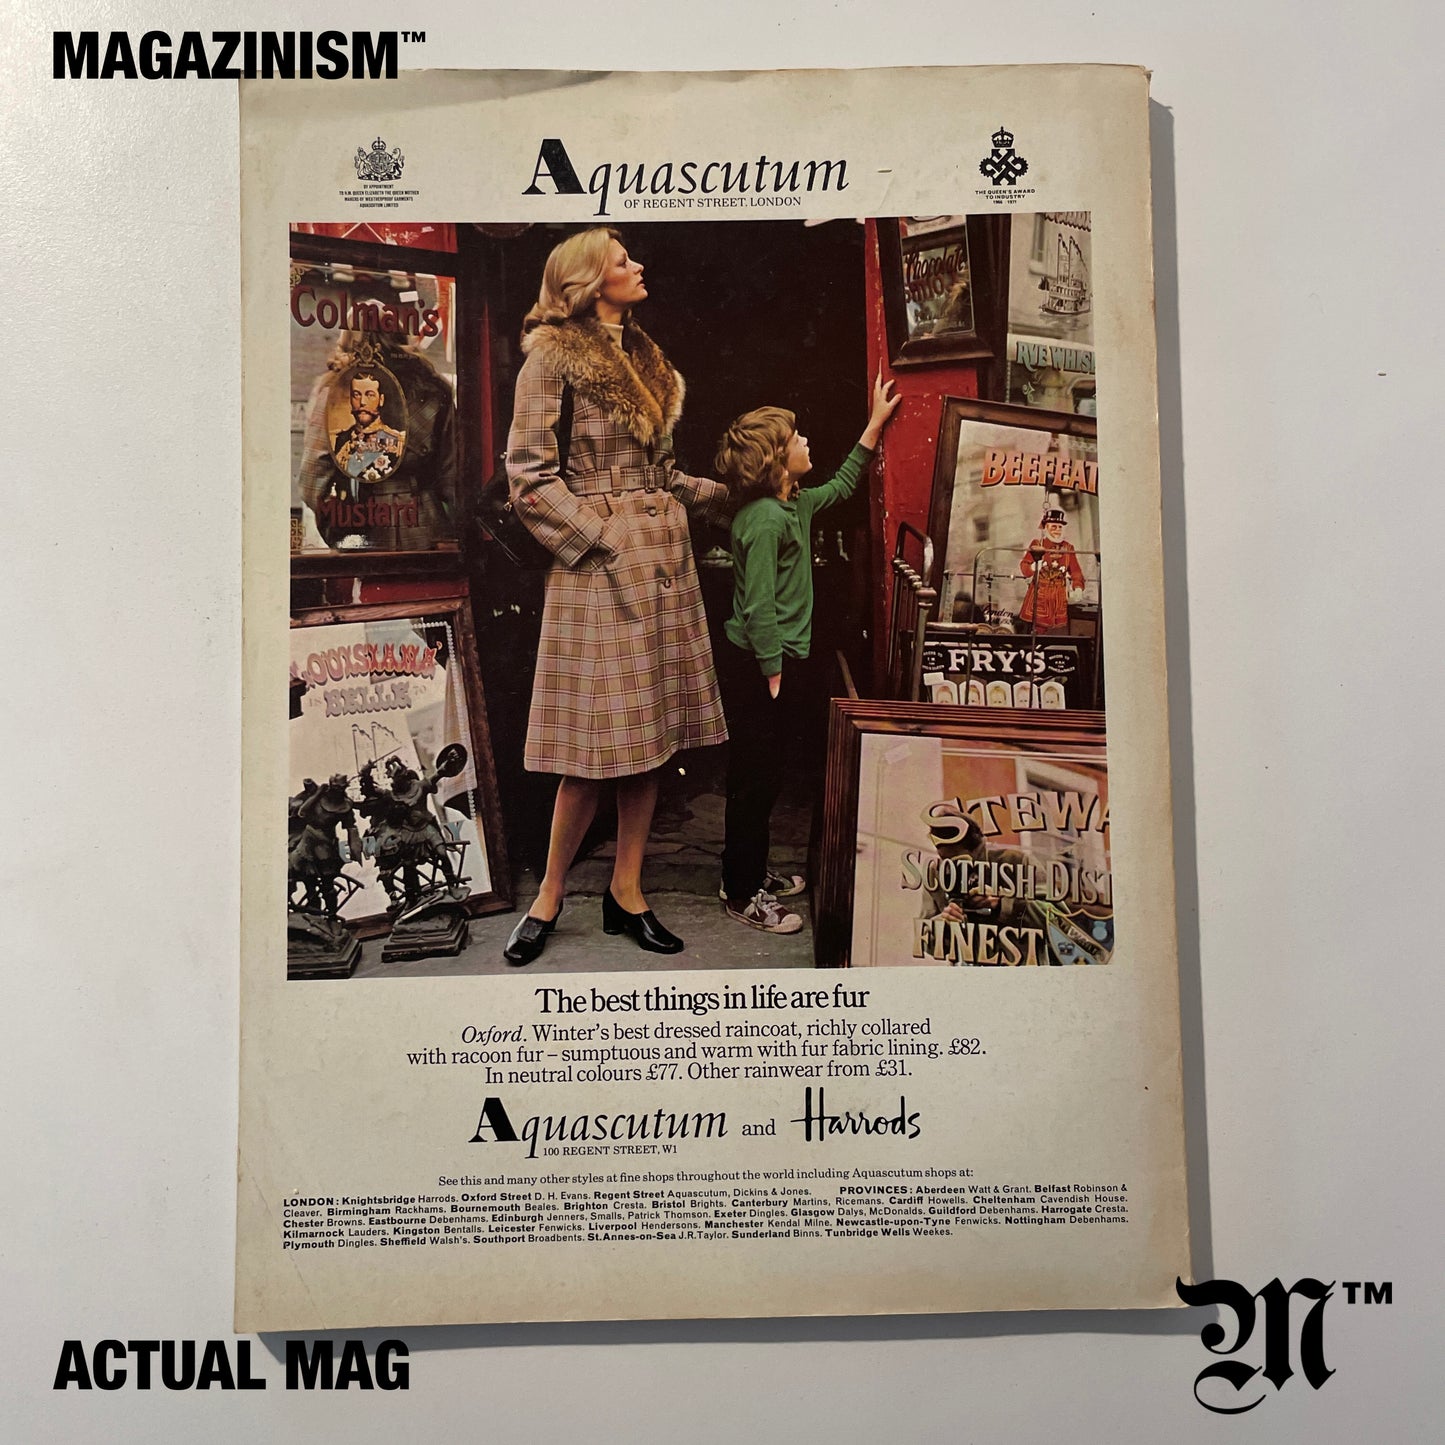 Vogue 1974 October